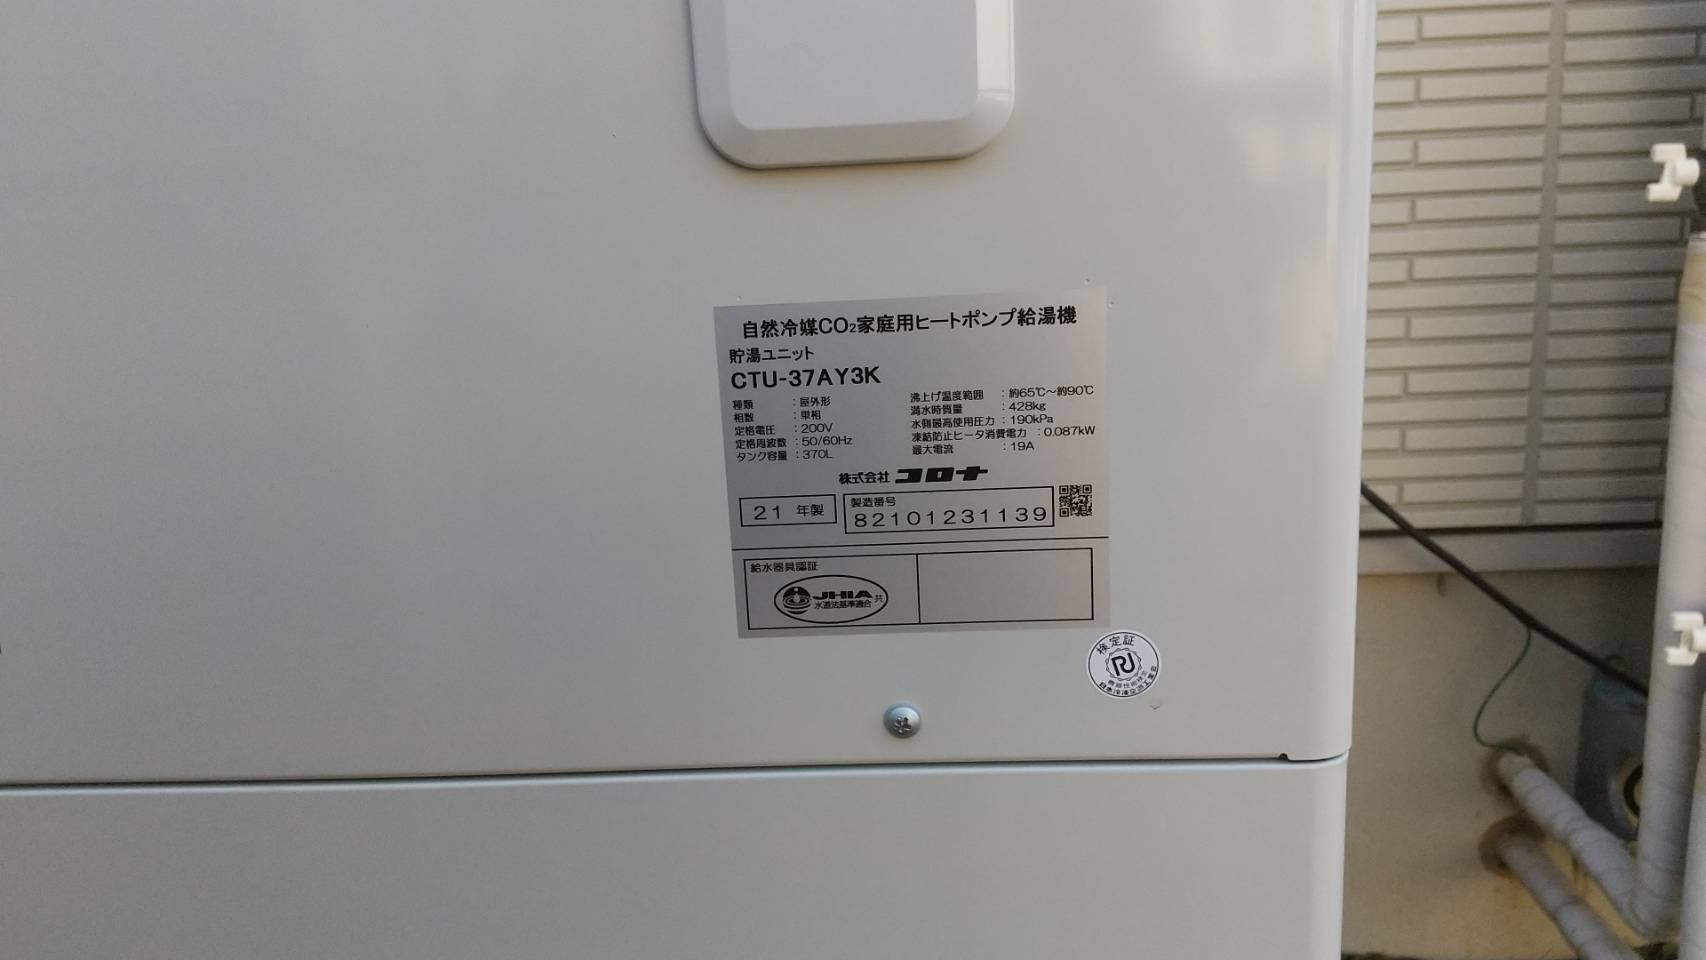 長野県辰野町コロナ自然冷媒CO2家庭用ヒートポンプ給湯機貯湯ユニット 